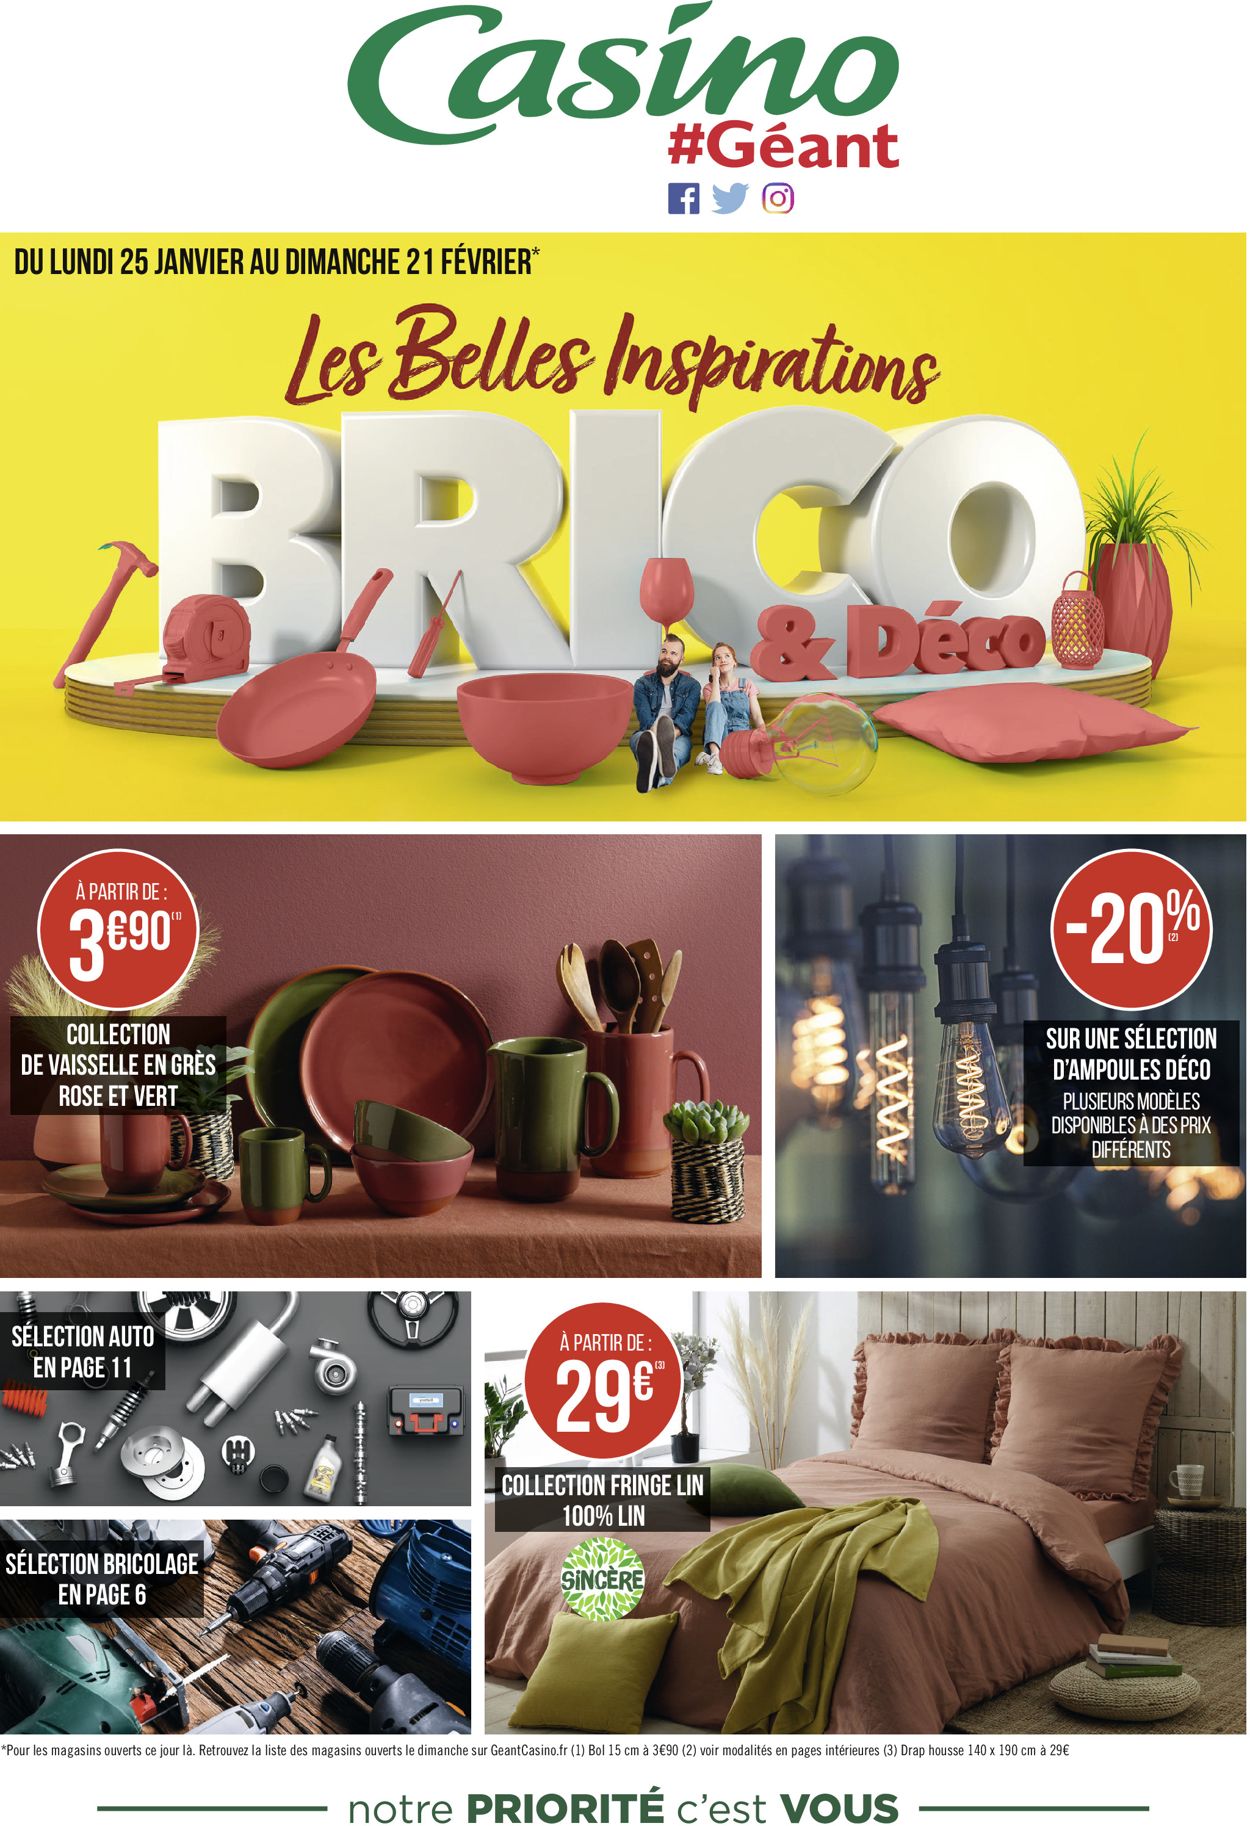 Géant Casino Inspirations Brico & Déco 2021 Catalogue - 25.01-21.02.2021